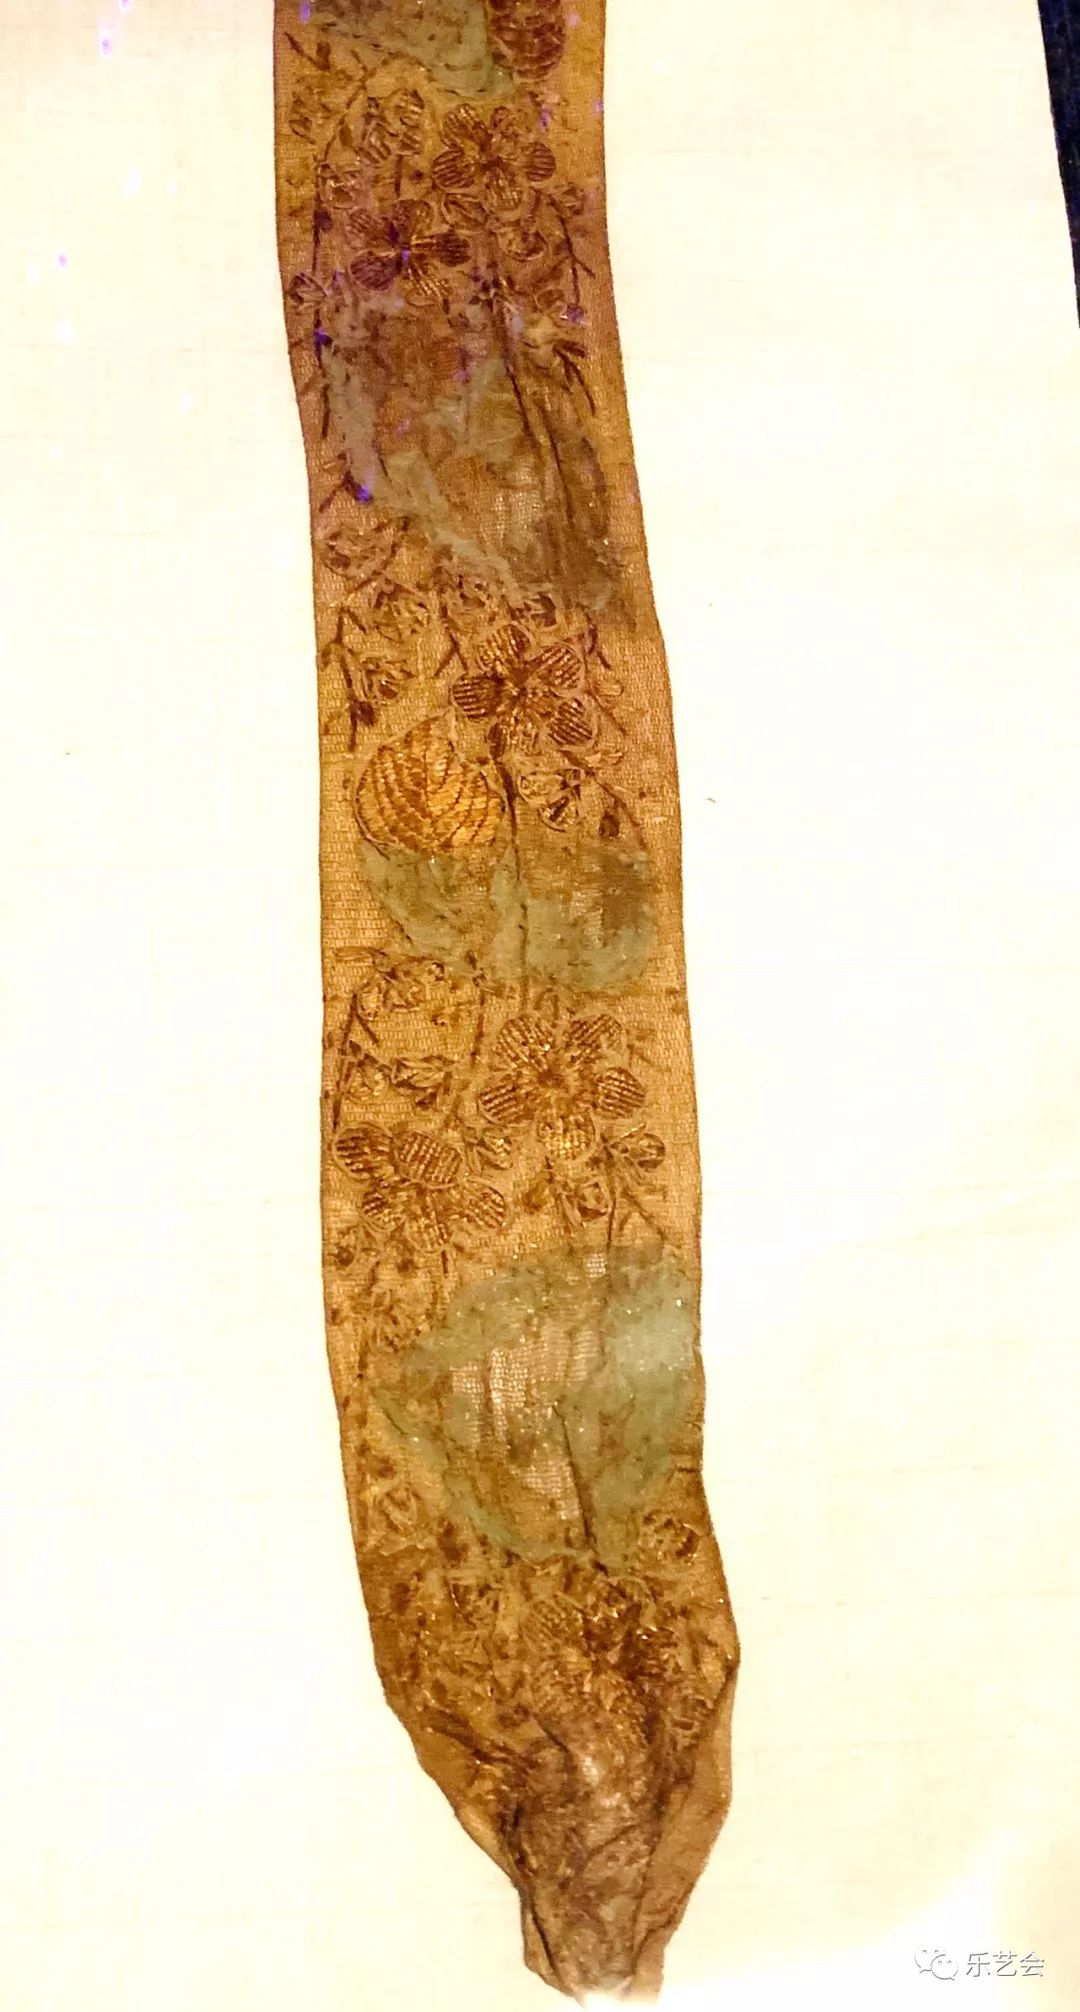 首博锦绣中华古代丝织品文化展之三无极斋分享